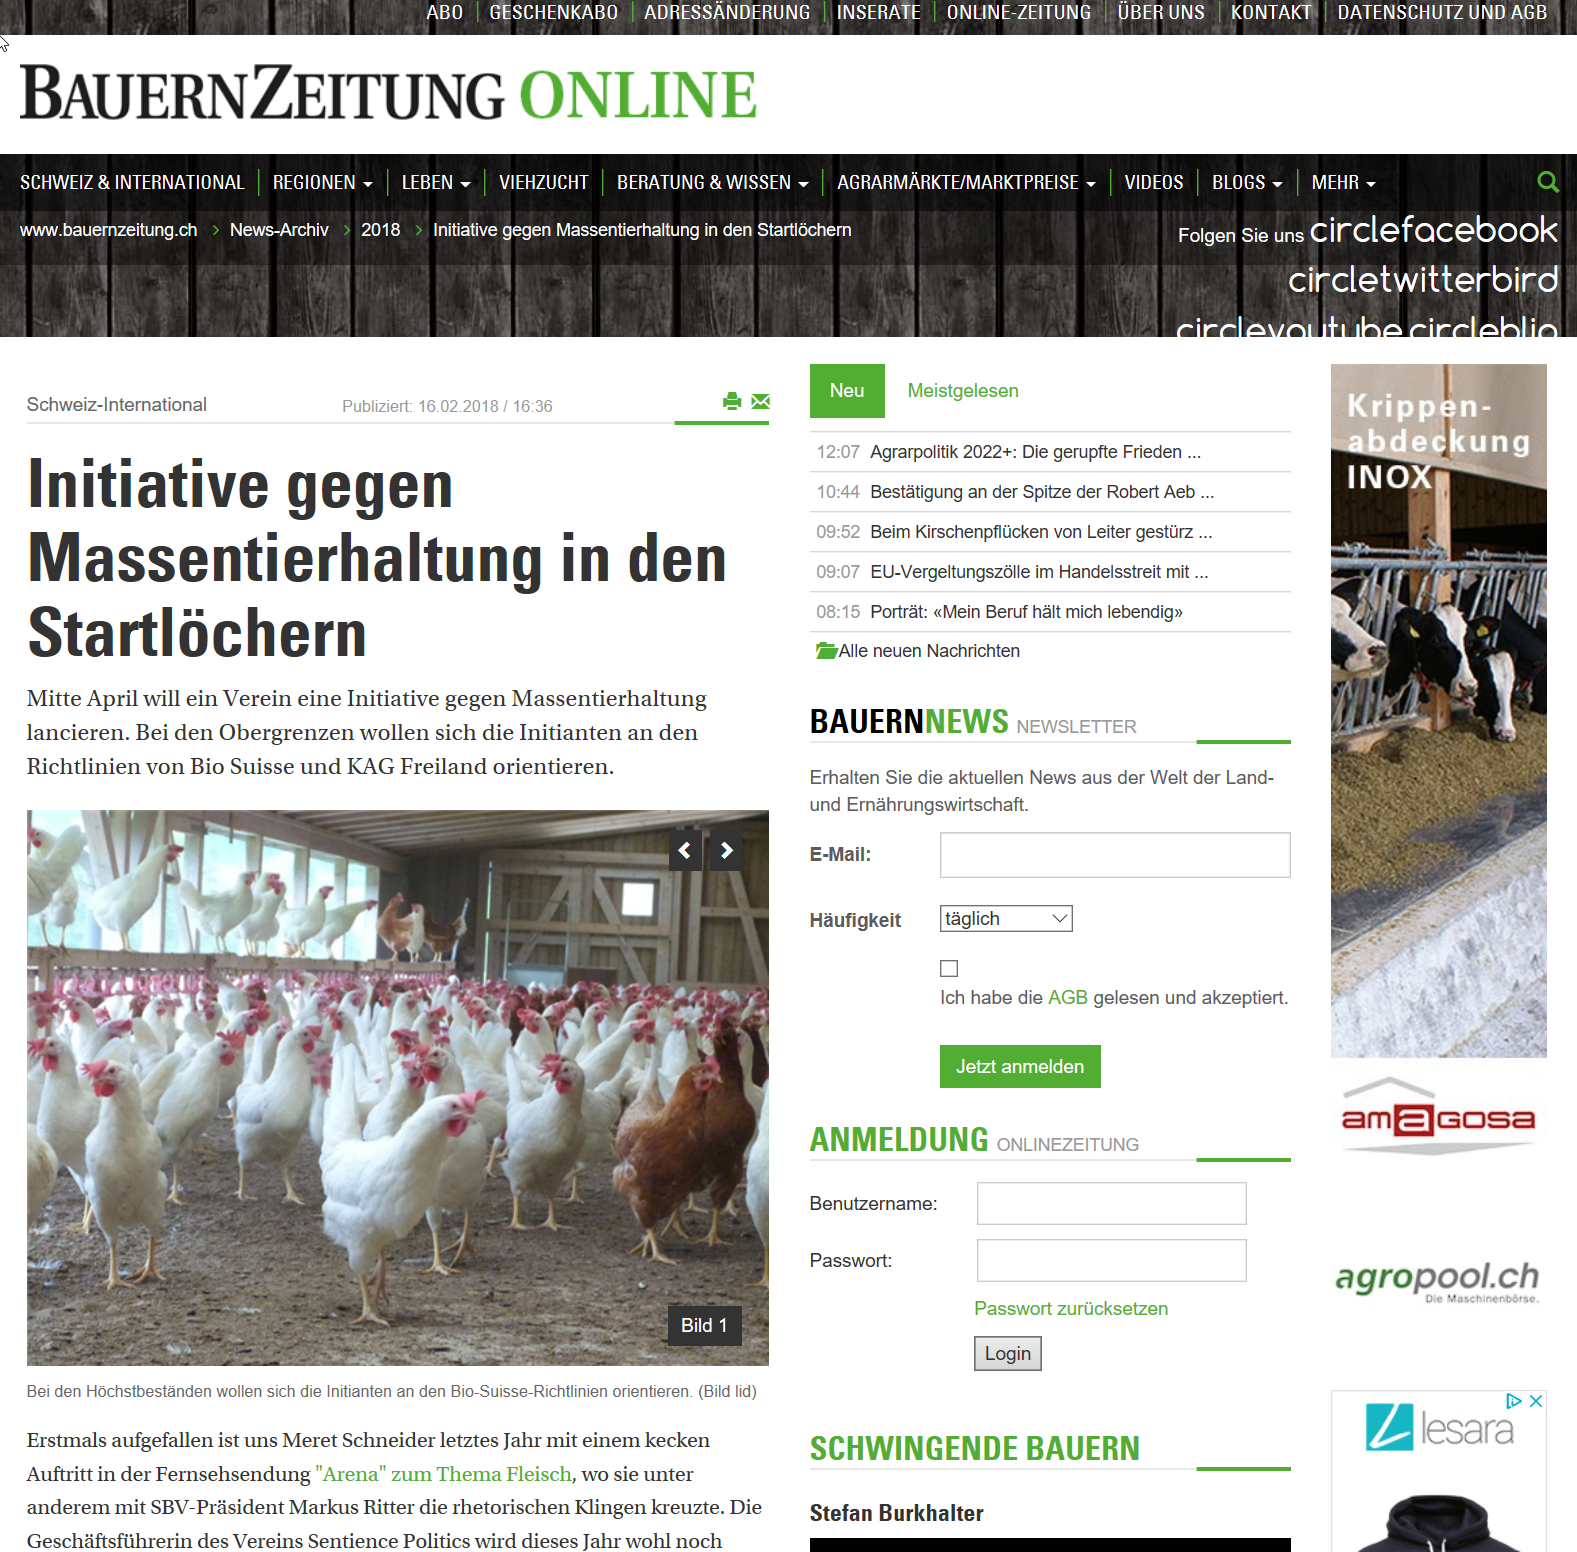 Image Initiative gegen Massentierhaltung in den Startlöcher, Berner Zeitung